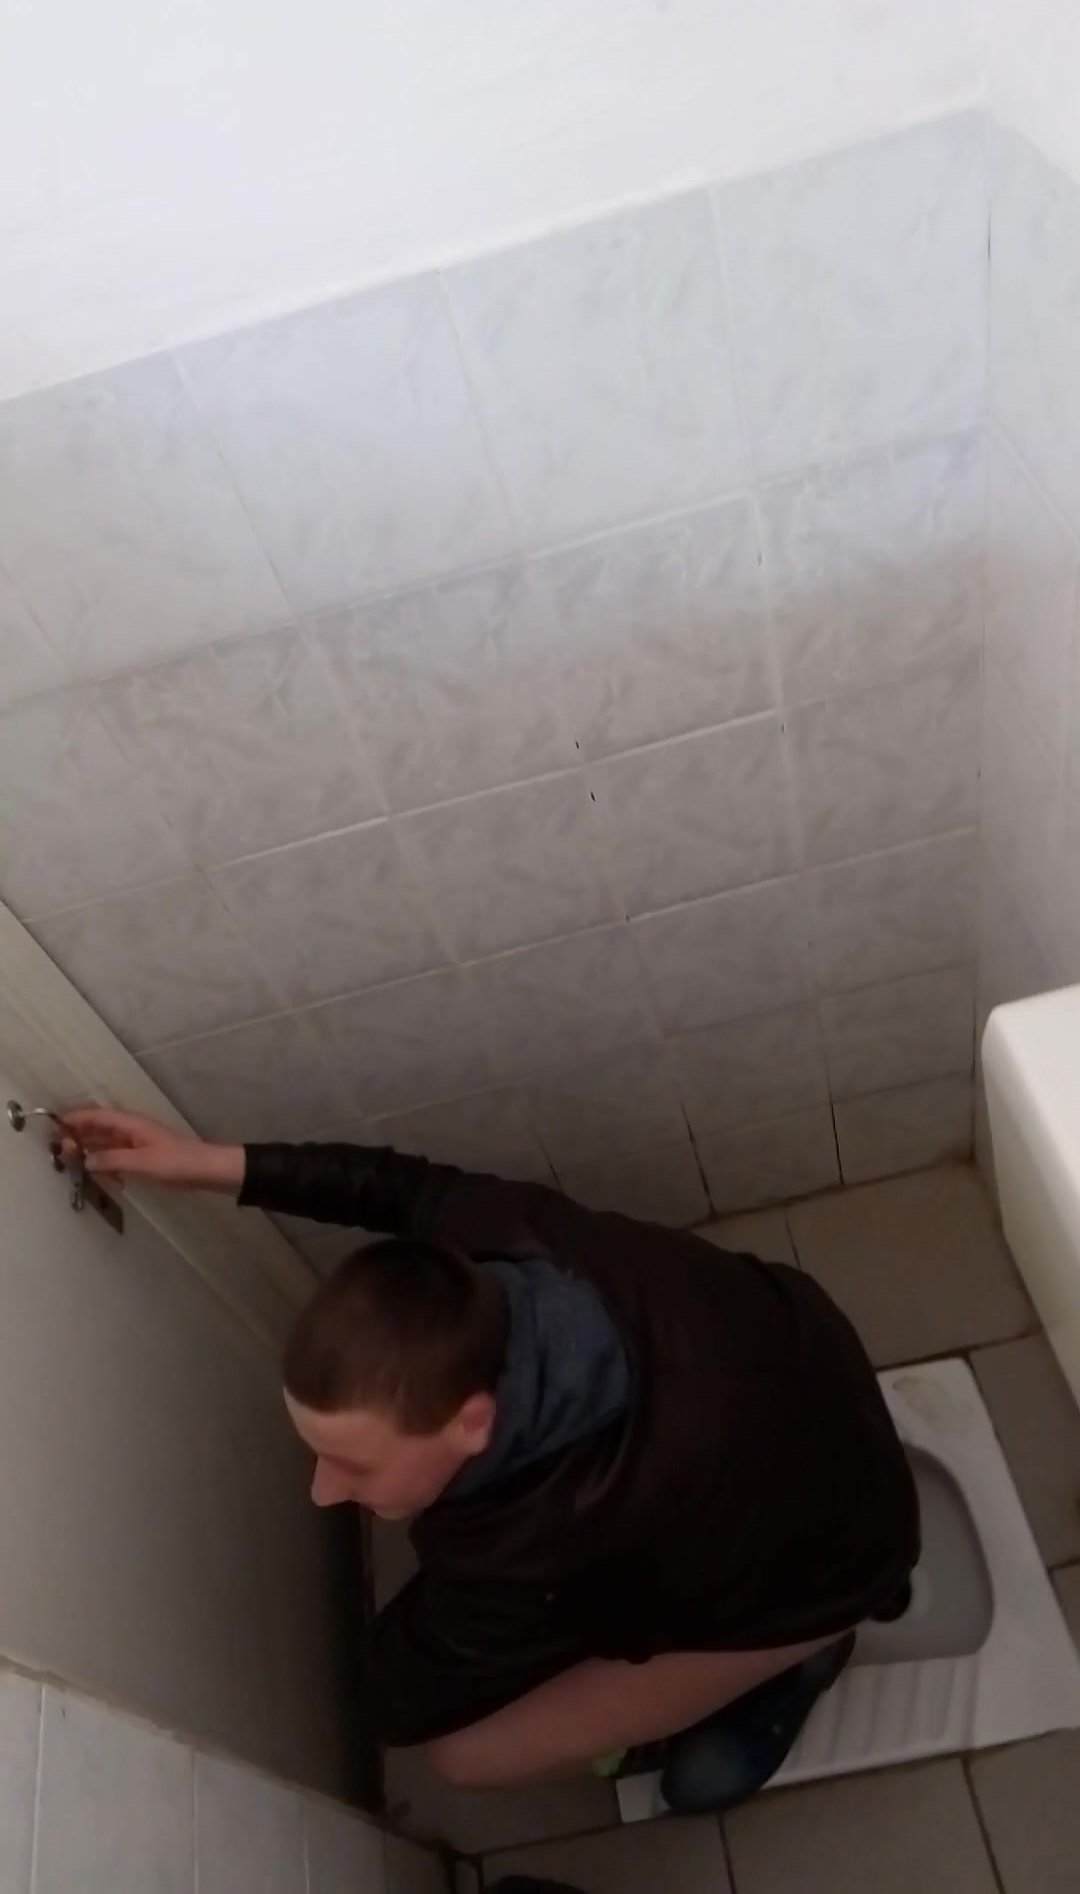 män squat toalett voyeur Porrfoton